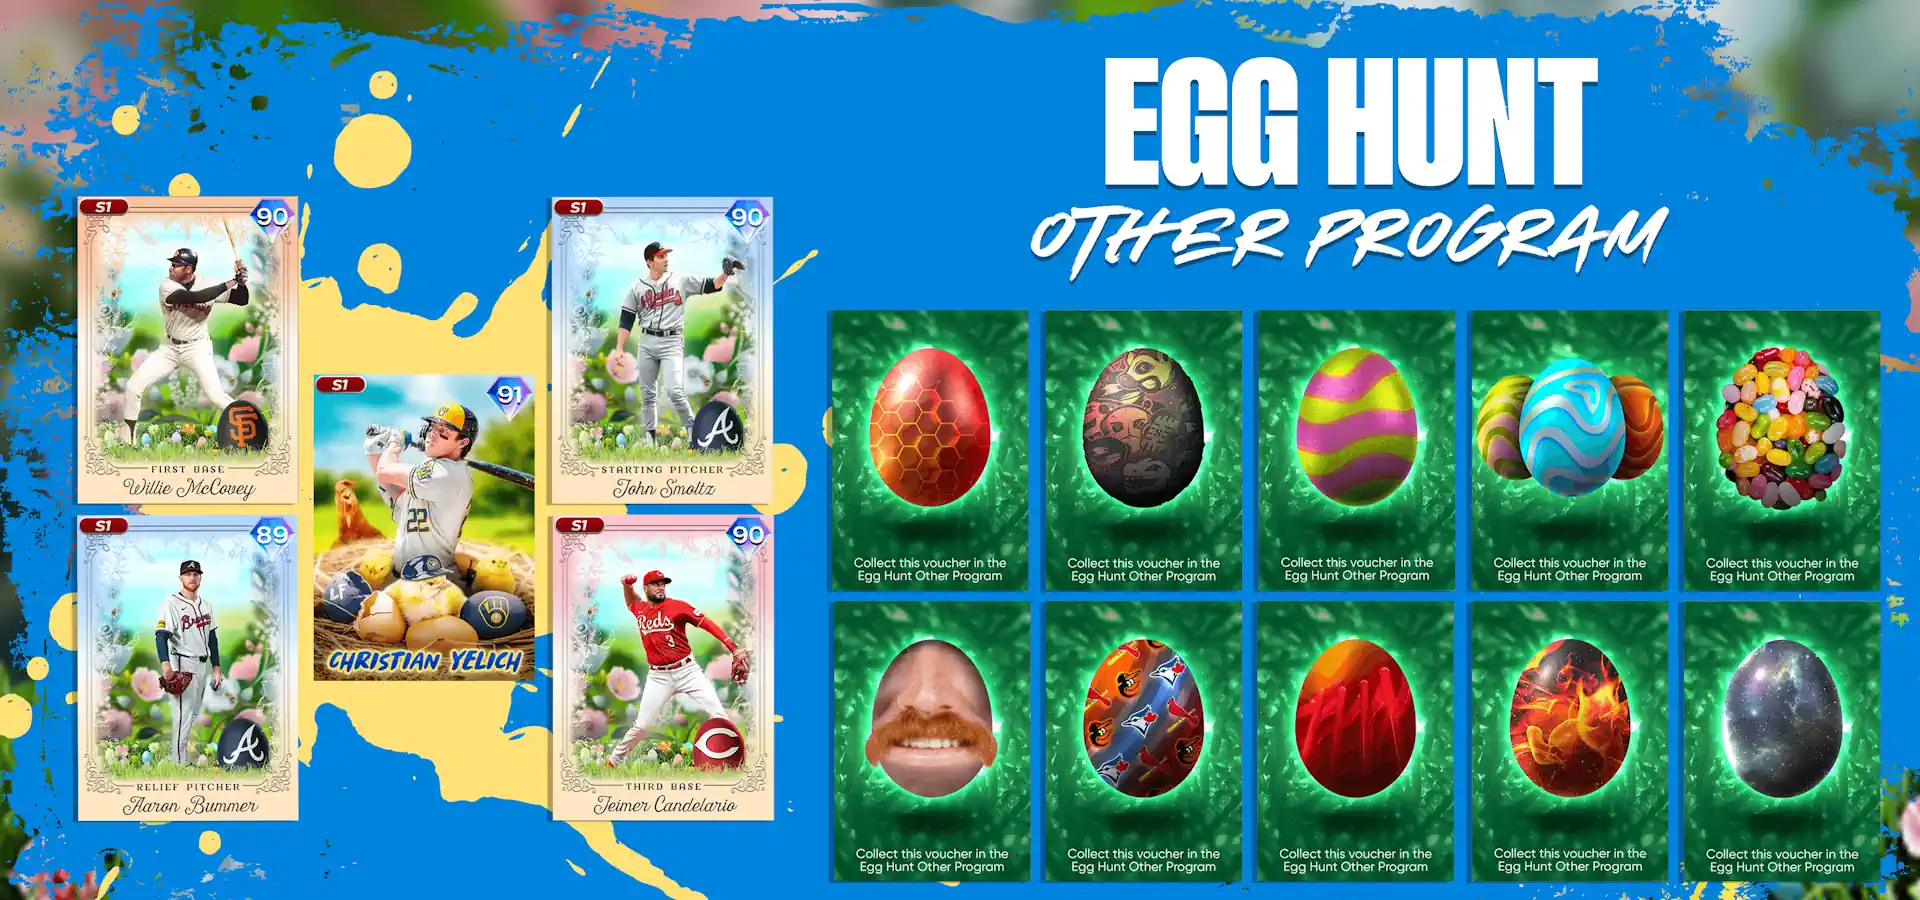 Egg Hunt Program